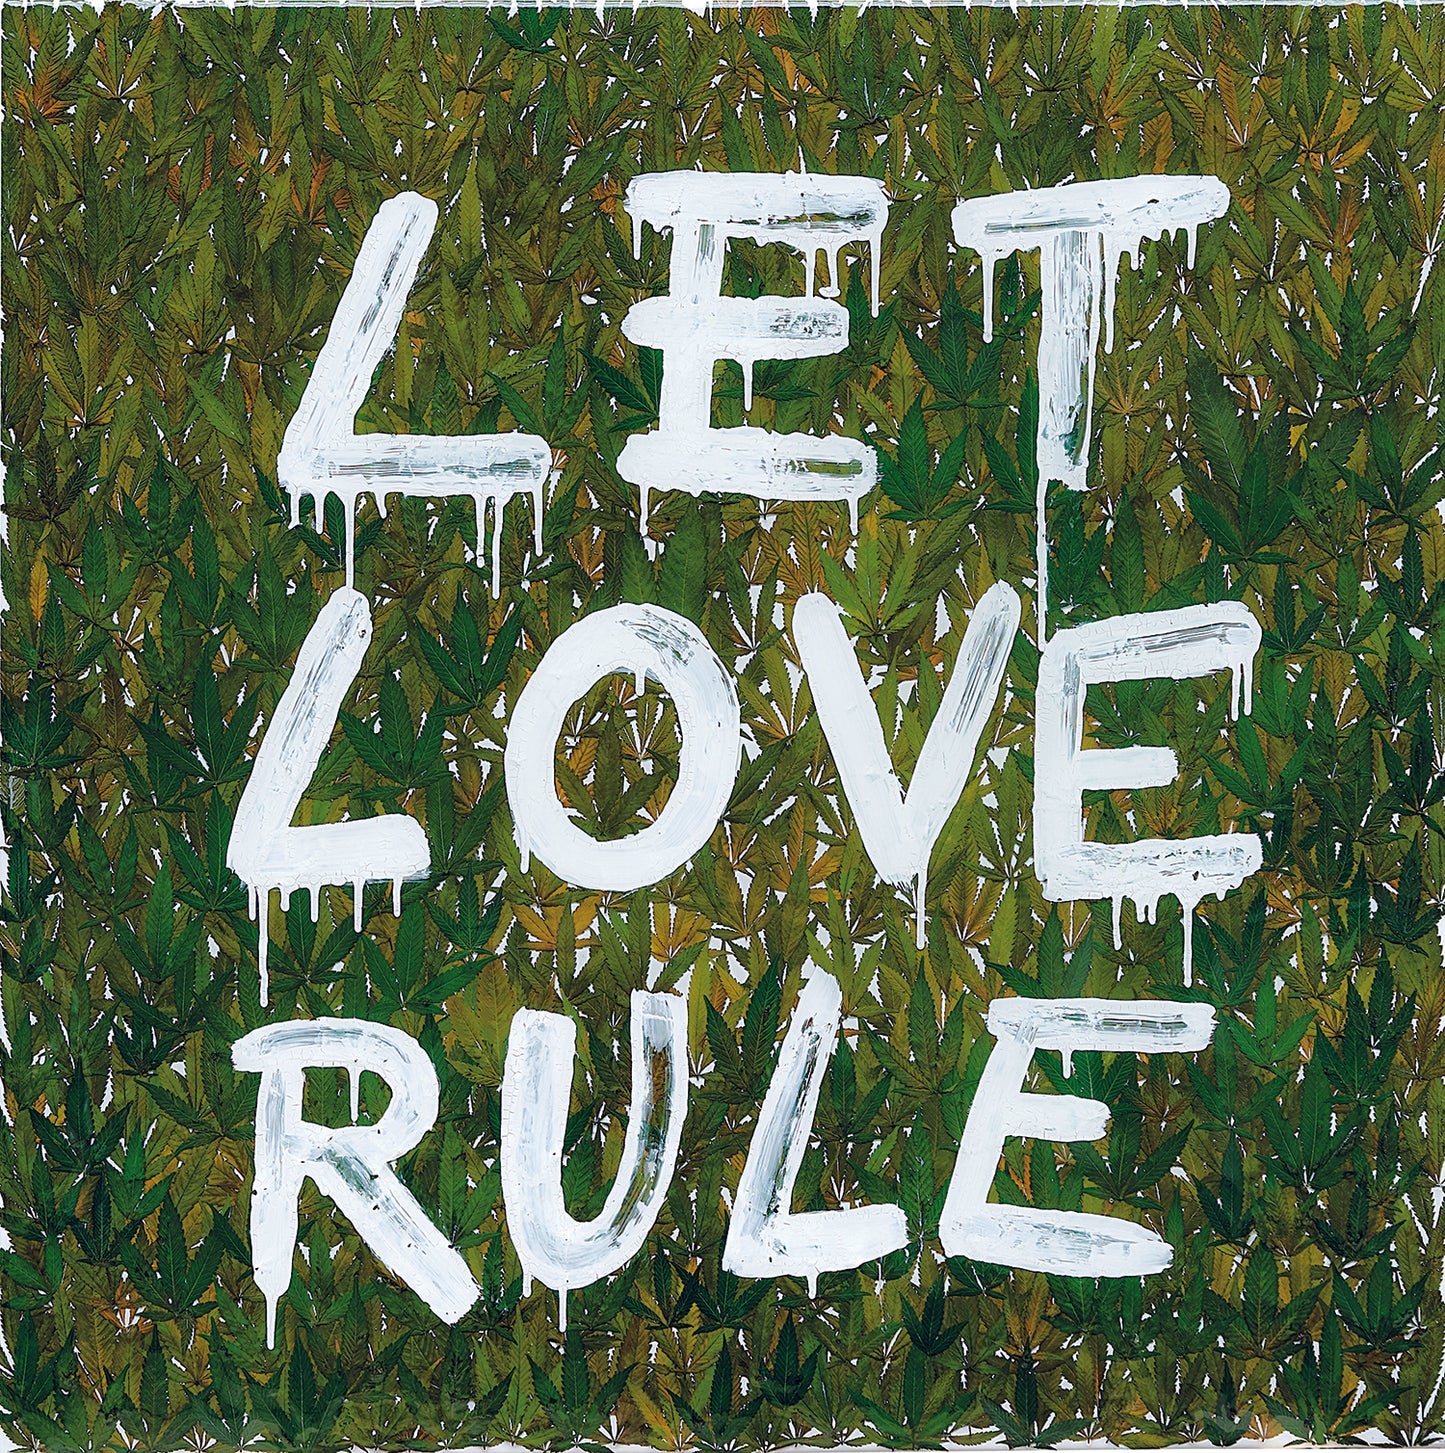 Let love rule